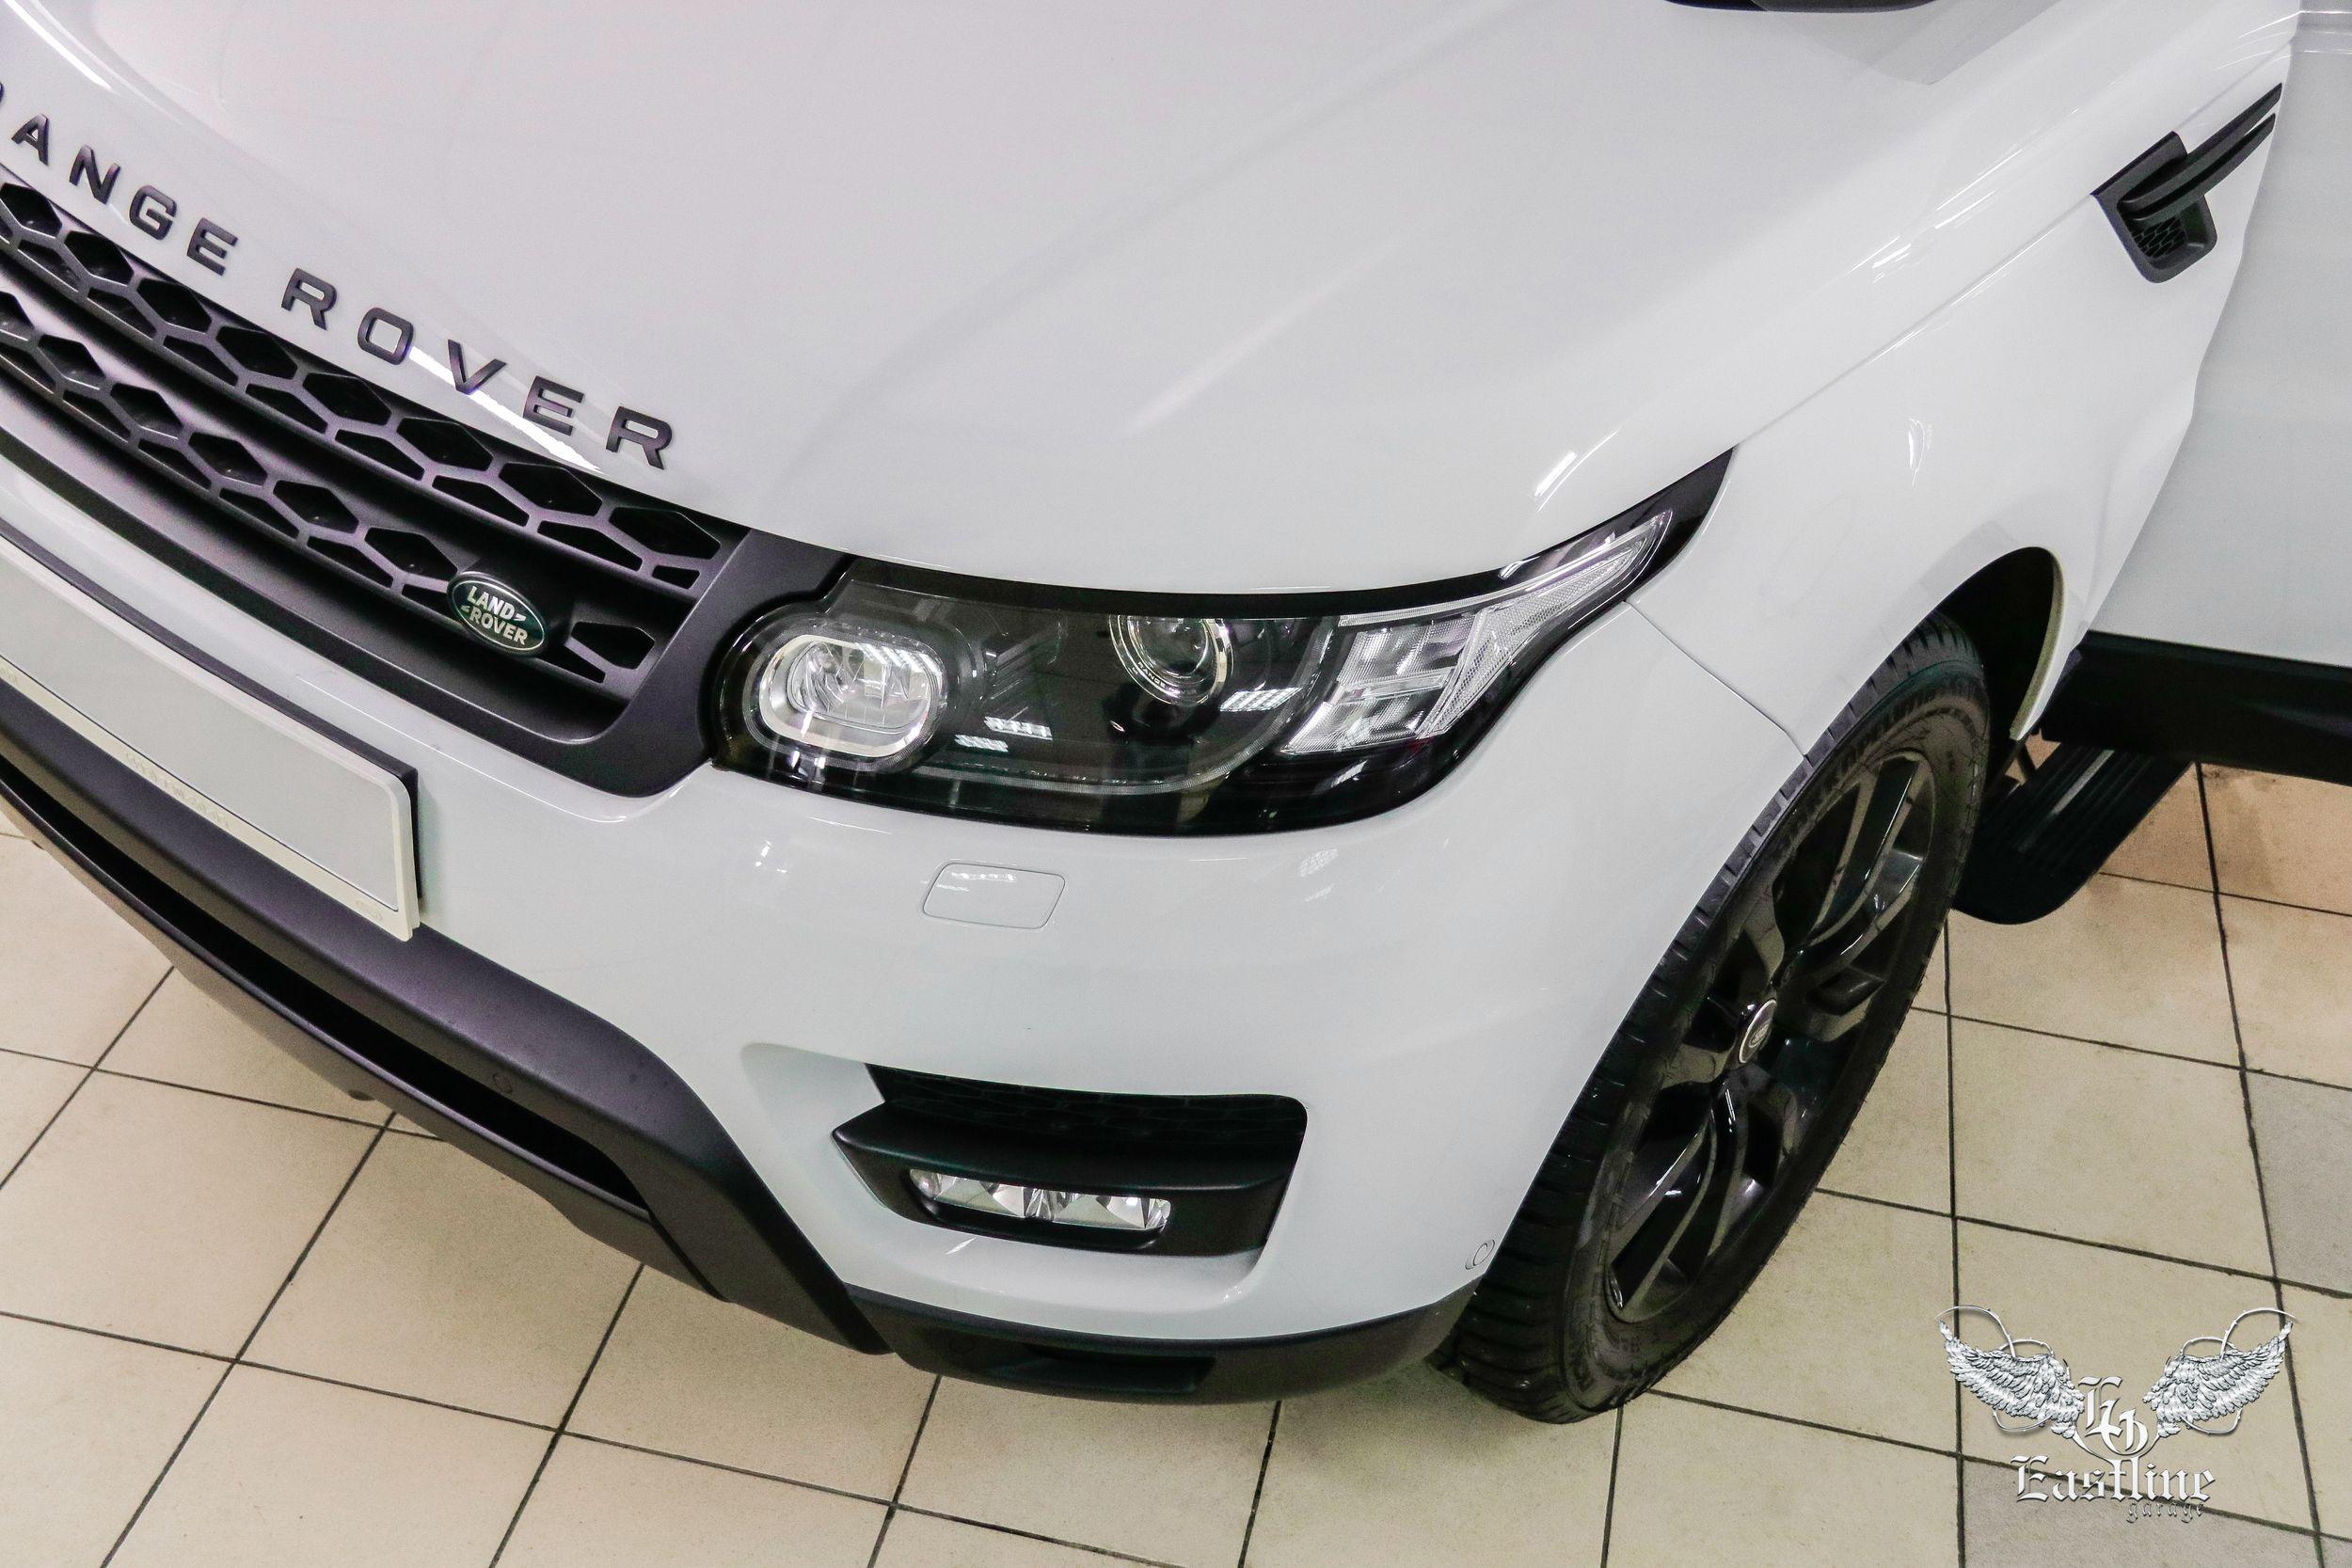 Цены на ремонт Range Rover Sport